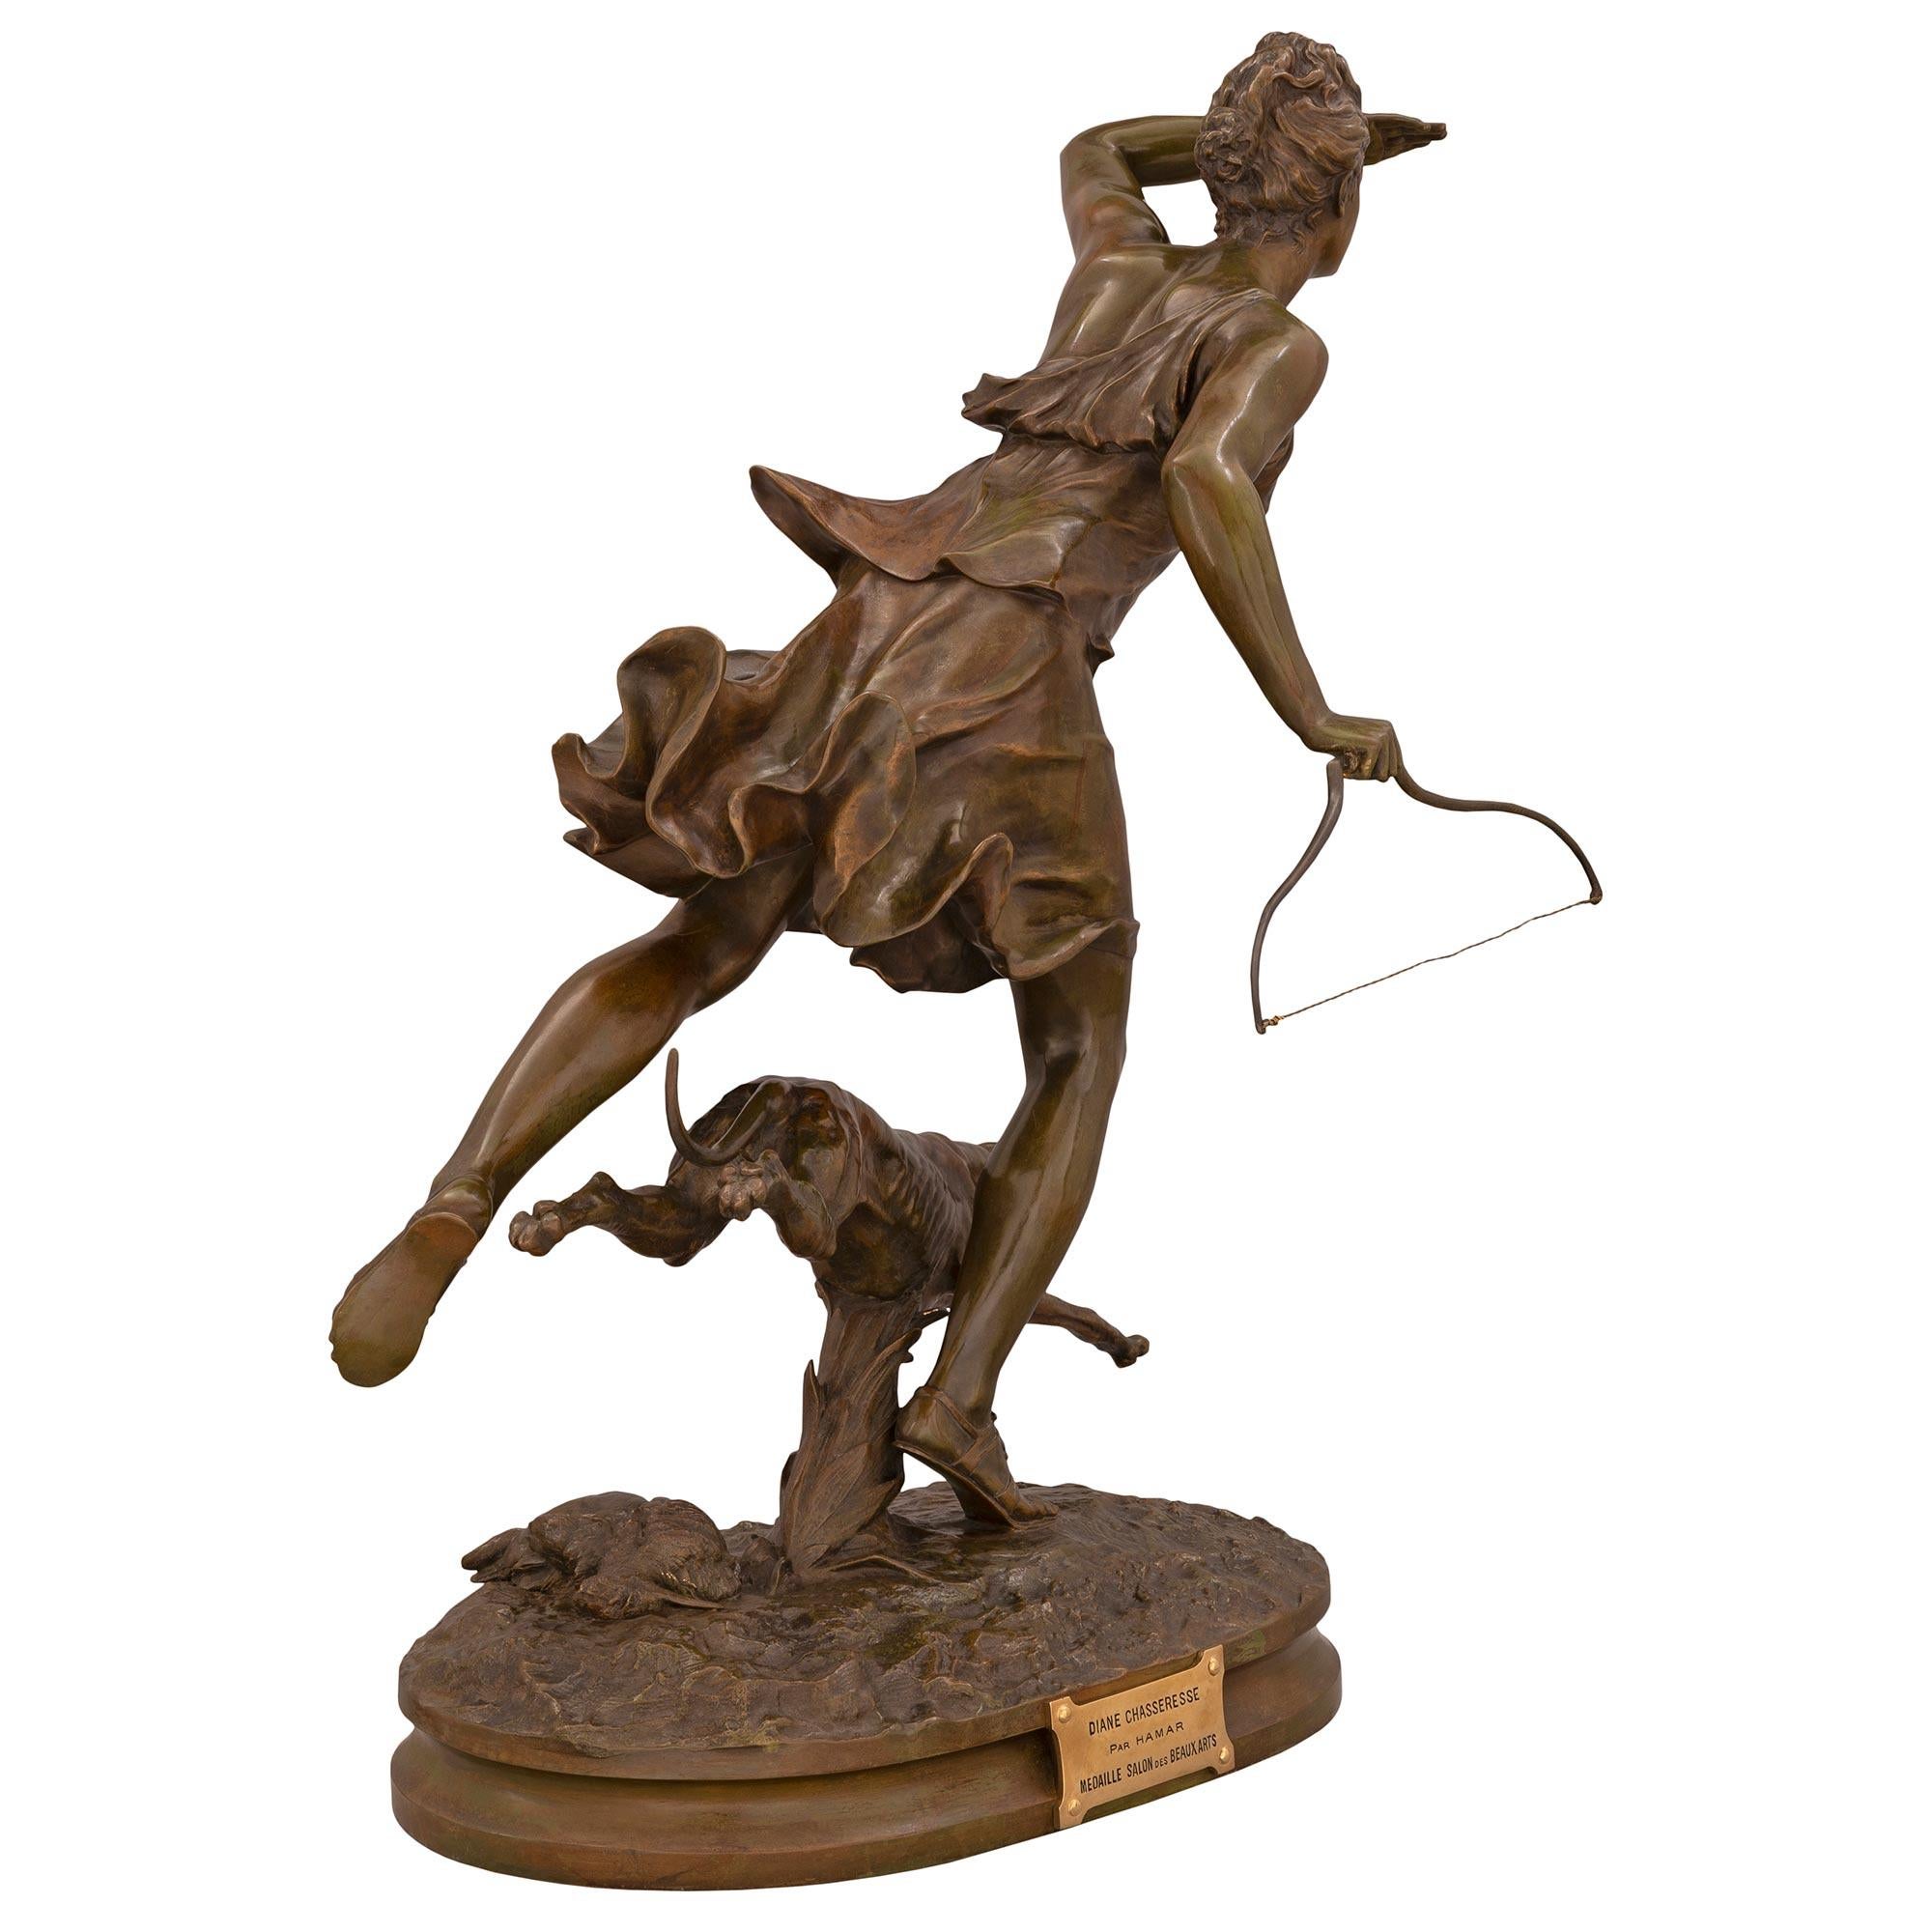 Eine atemberaubende französische Statue aus patinierter Bronze und Ormolu von Diana der Jägerin und ihrem Hund, signiert F. Hamar, aus der Jahrhundertwende. Die Statue steht auf einem eleganten, länglichen Sockel mit einer fein gesprenkelten